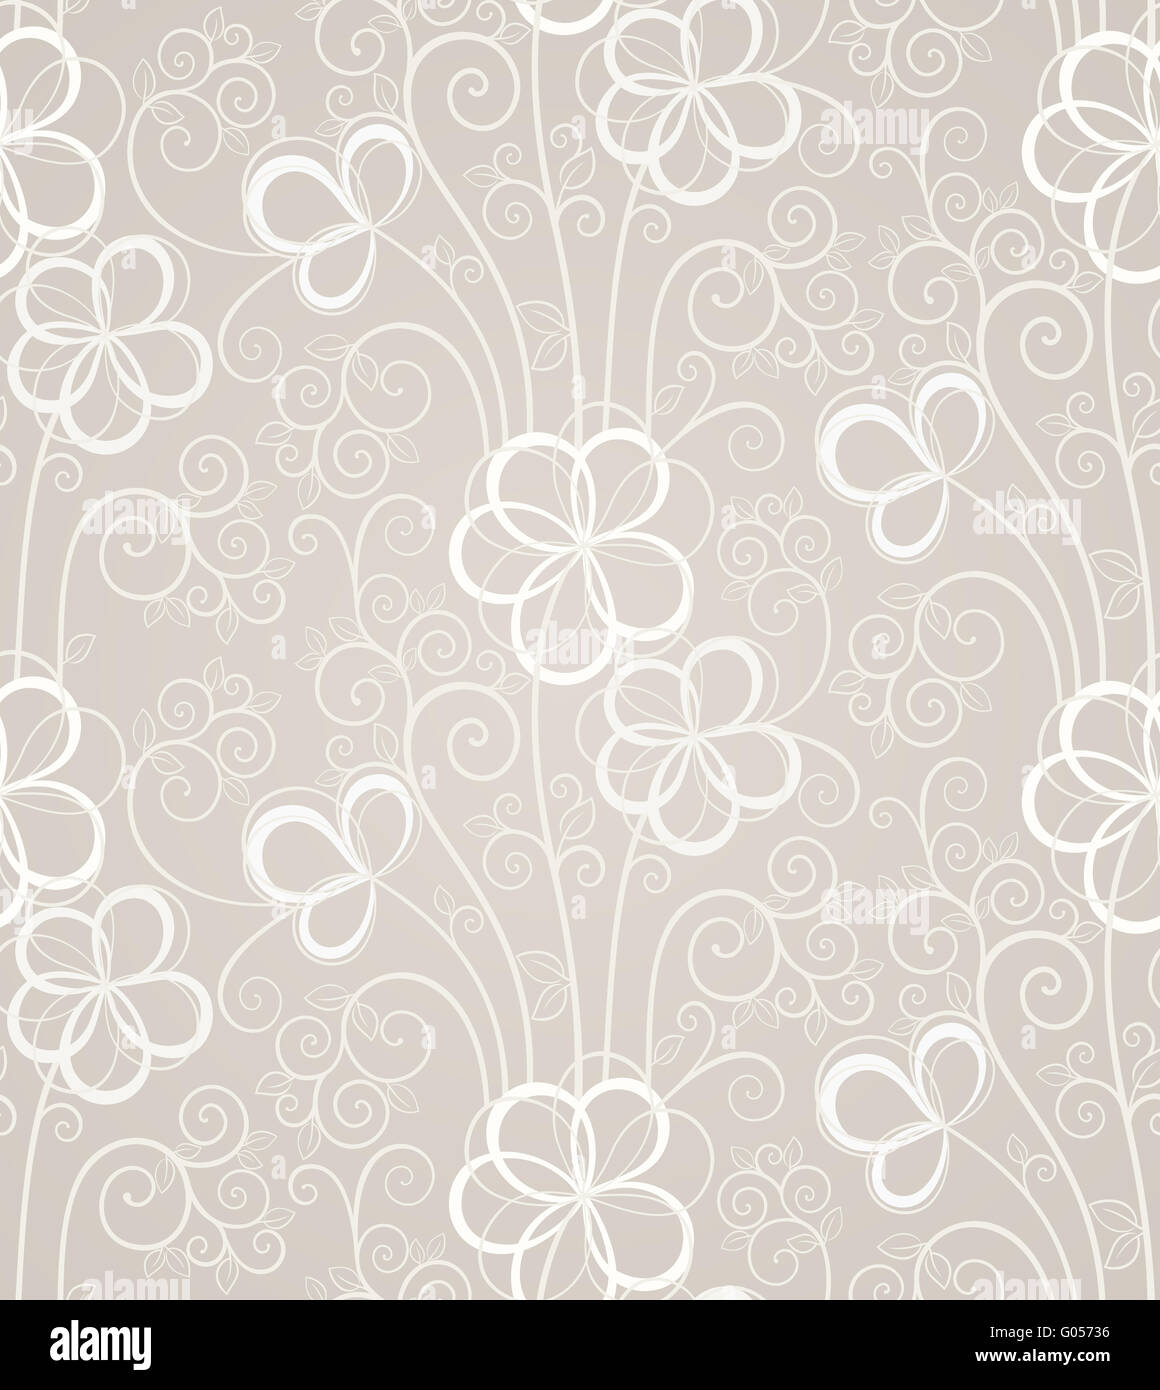 Eccellente swirl floral background senza giunture Foto Stock